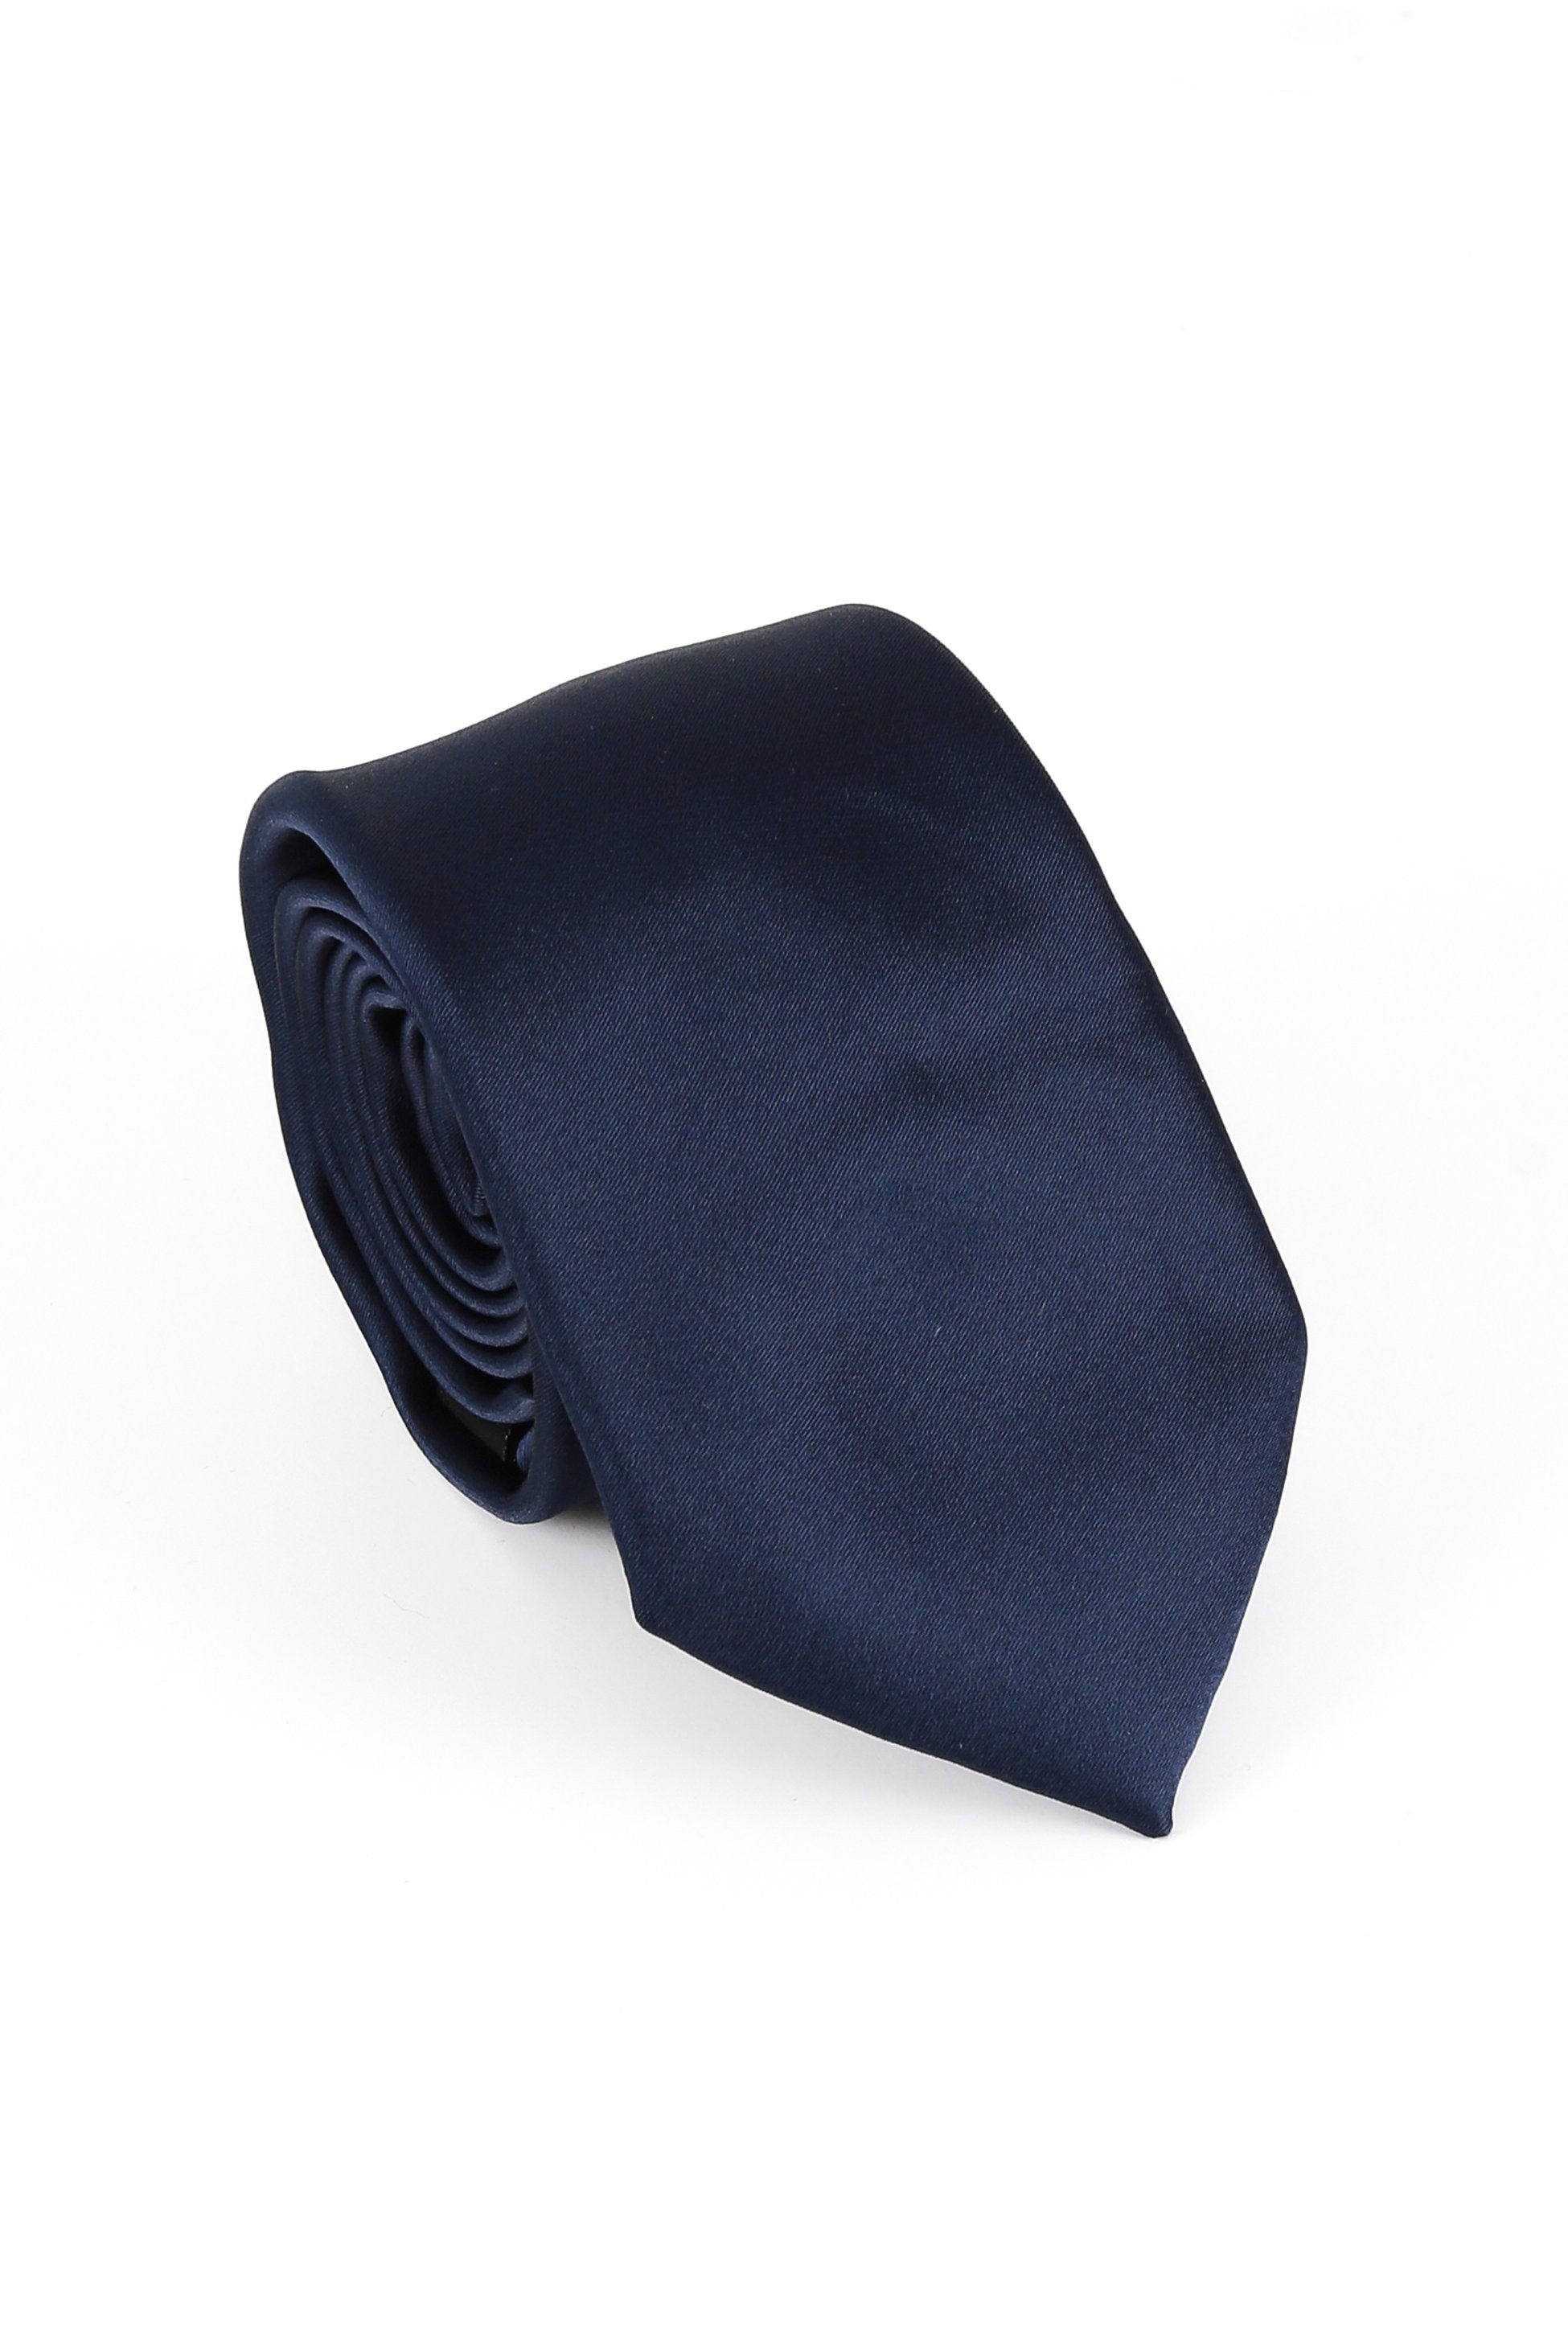 Männer Solide Satin Krawatte Manschettenknopf 4 Teilige Hochzeitsgeschenkset Set - Navy blau